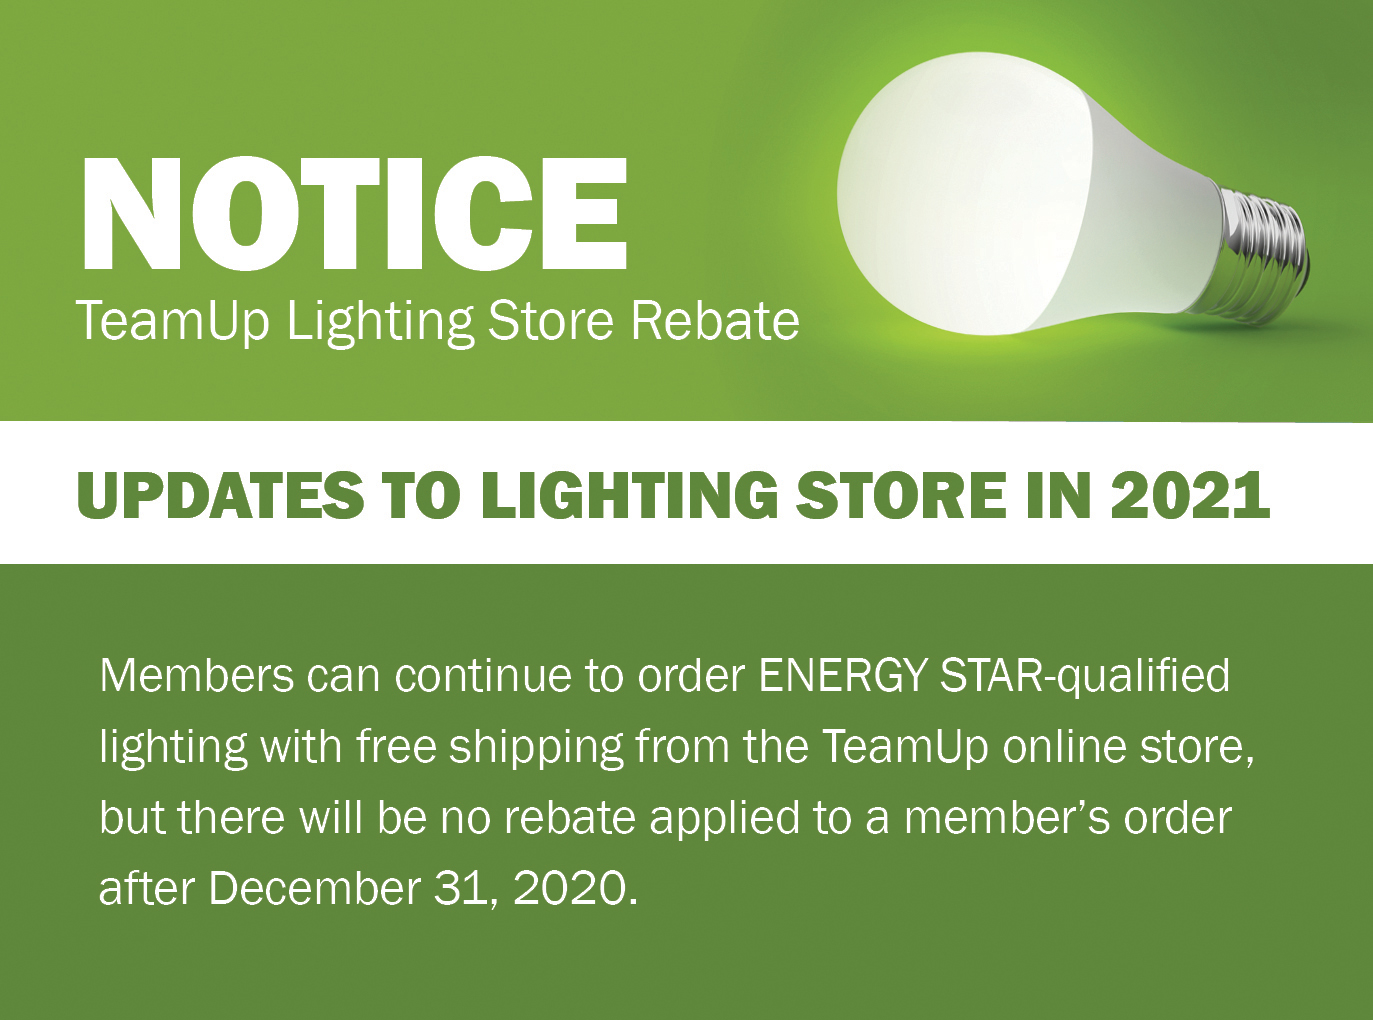 Lighting store update graphic